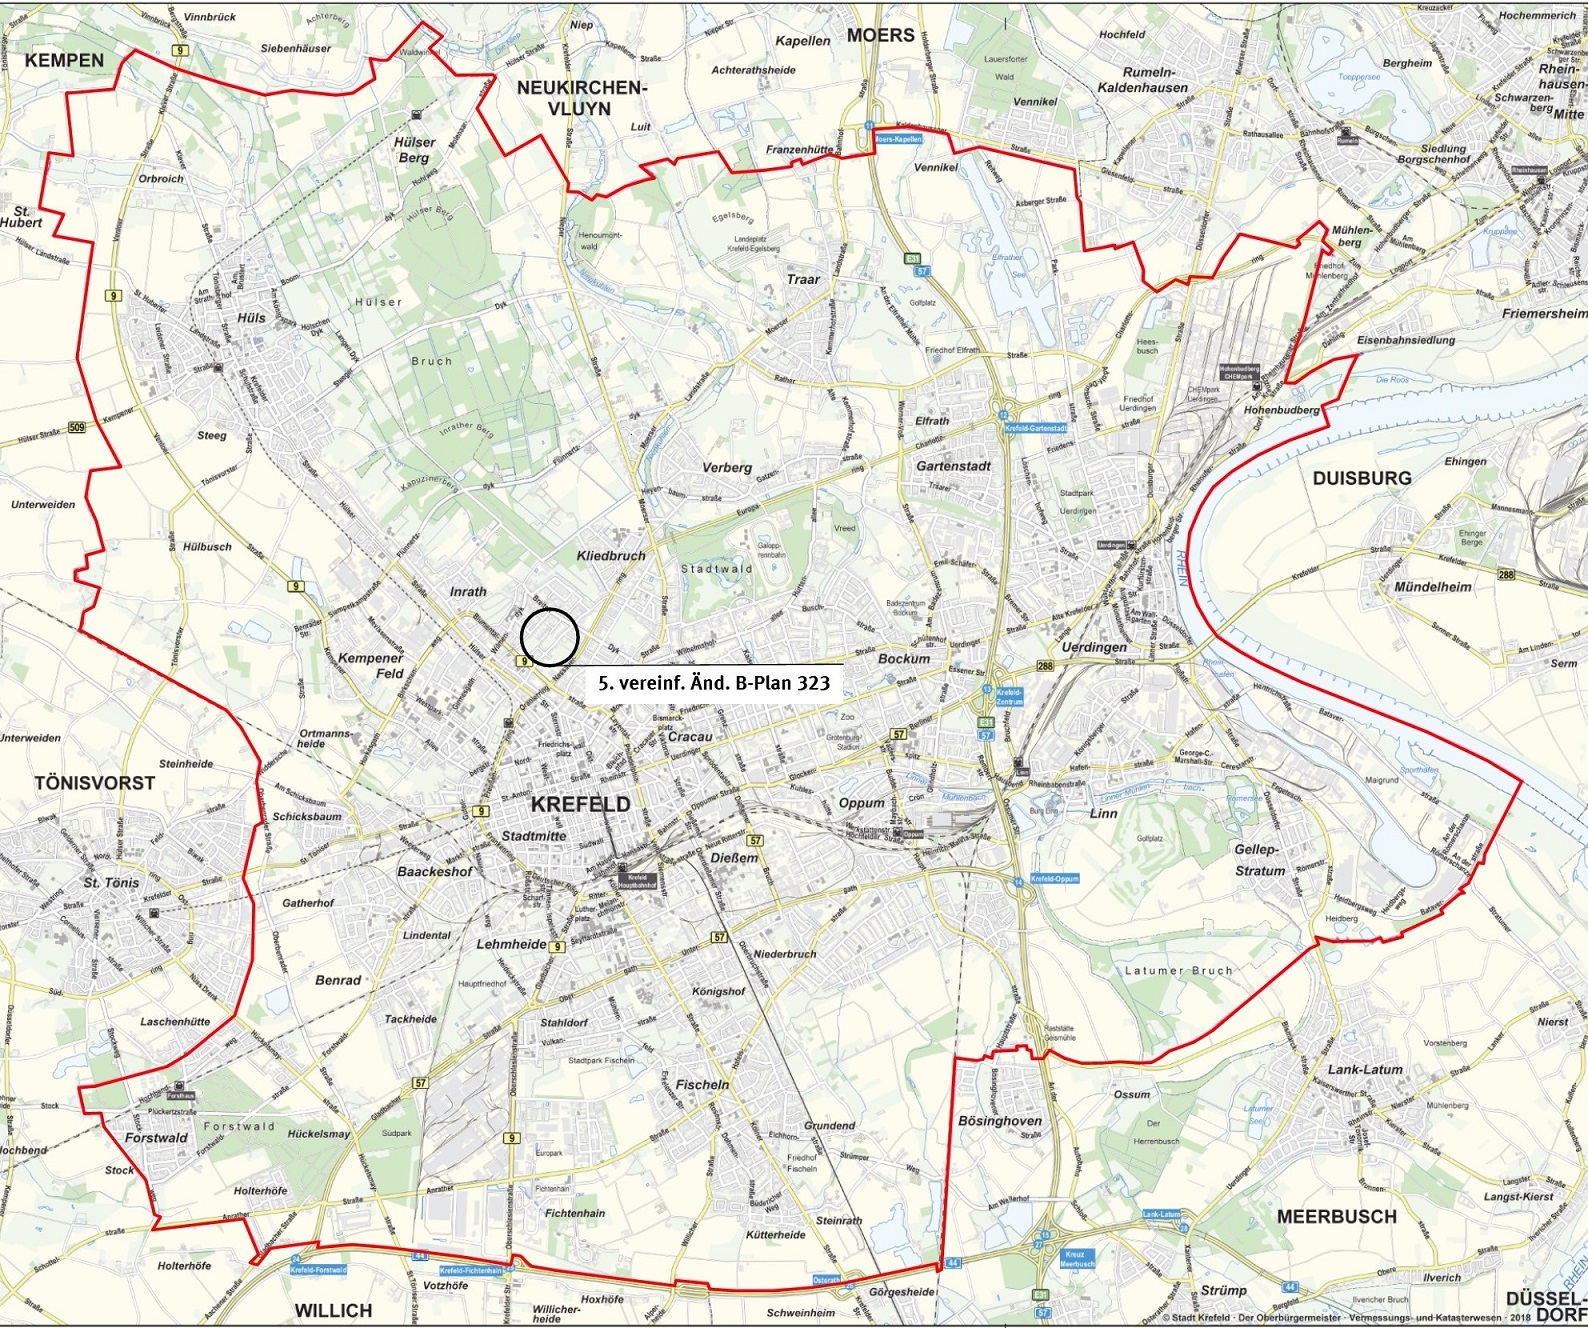 5. vereinfachte Änderung des Bebauungsplanes 323 in der Stadtkarte